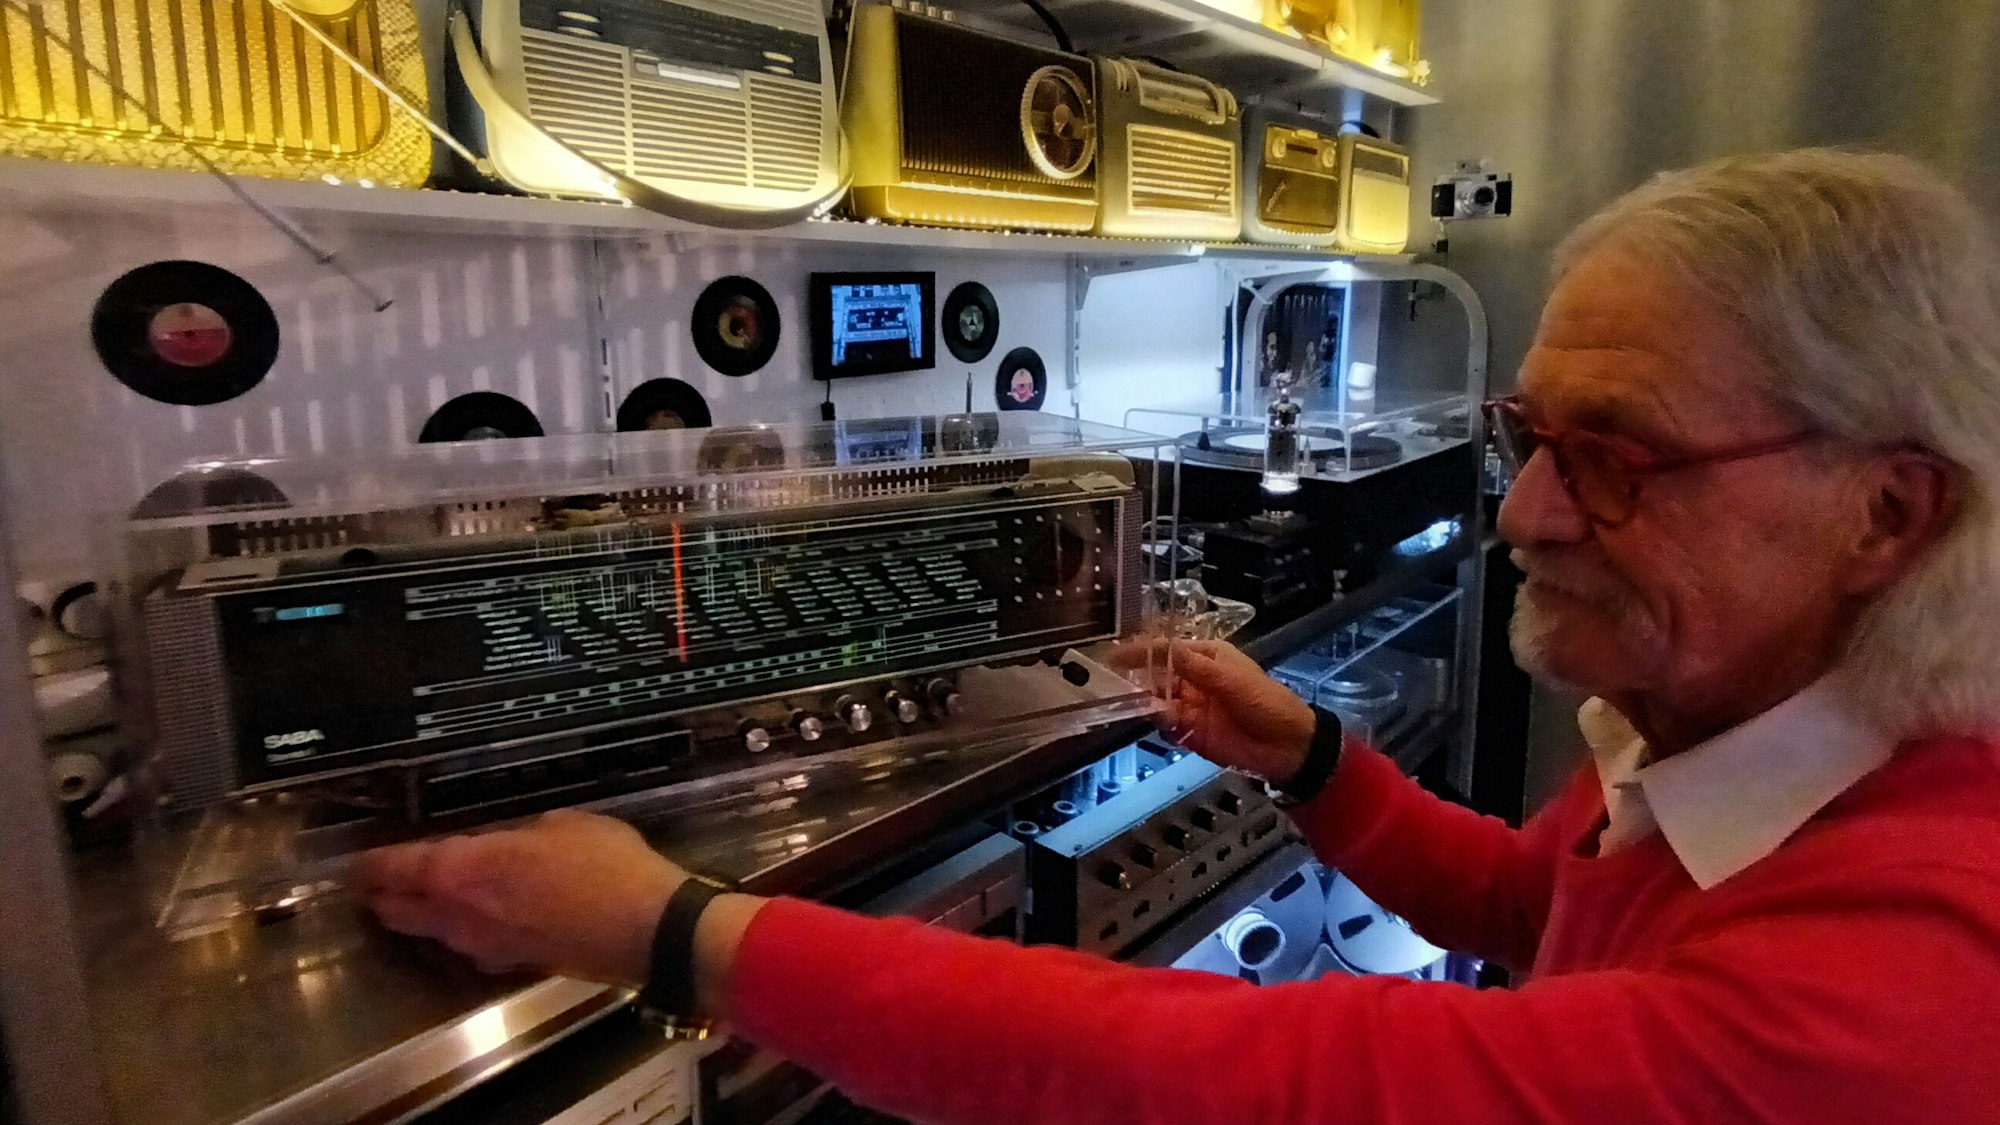 Ein Mann betrachtet ein Radio auf einem Regal voller alter Musikgeräte